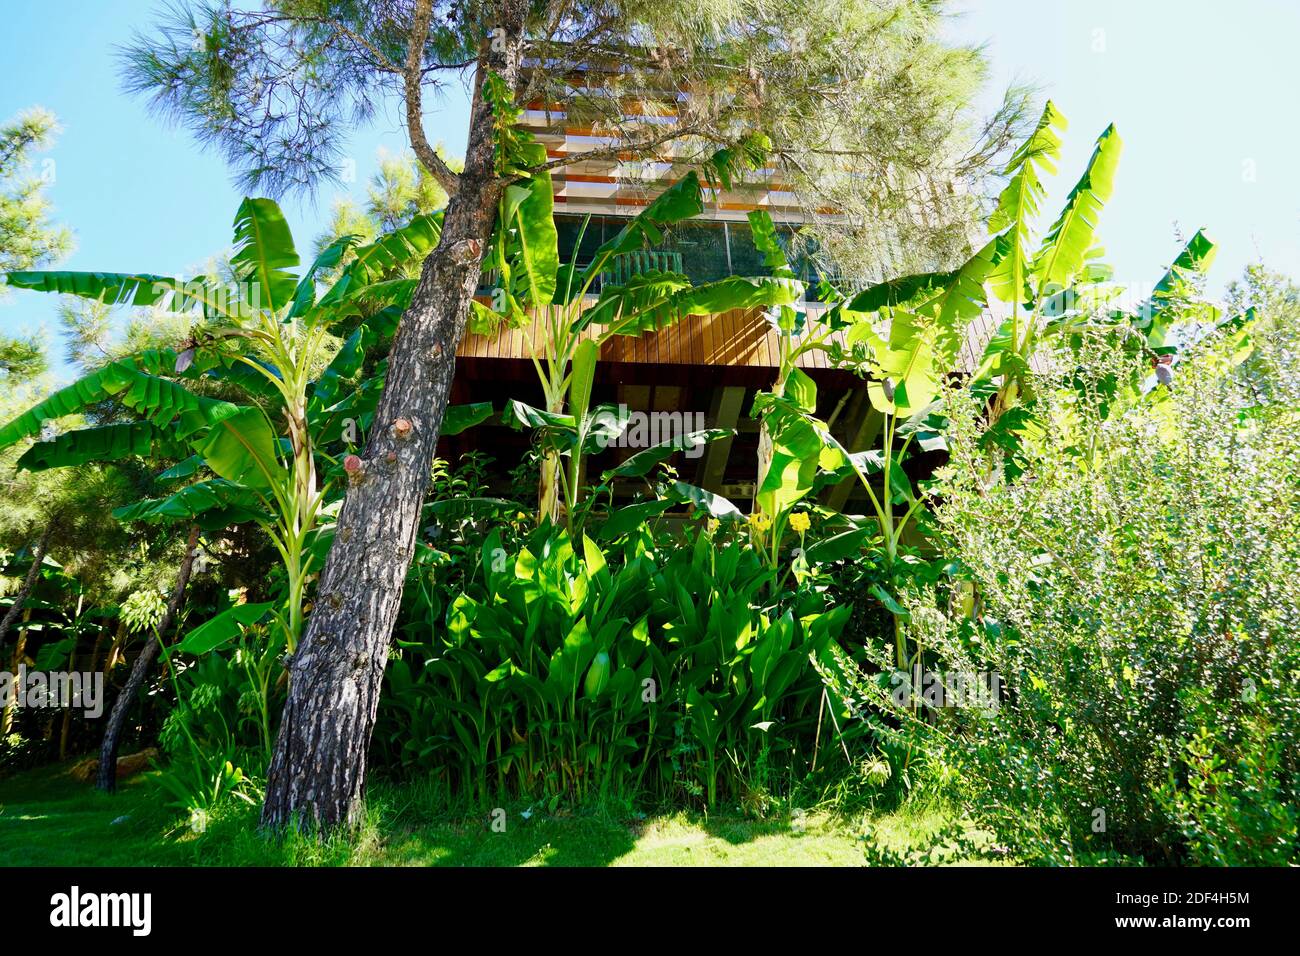 Luxury villa in bamboo garden Stock Photo